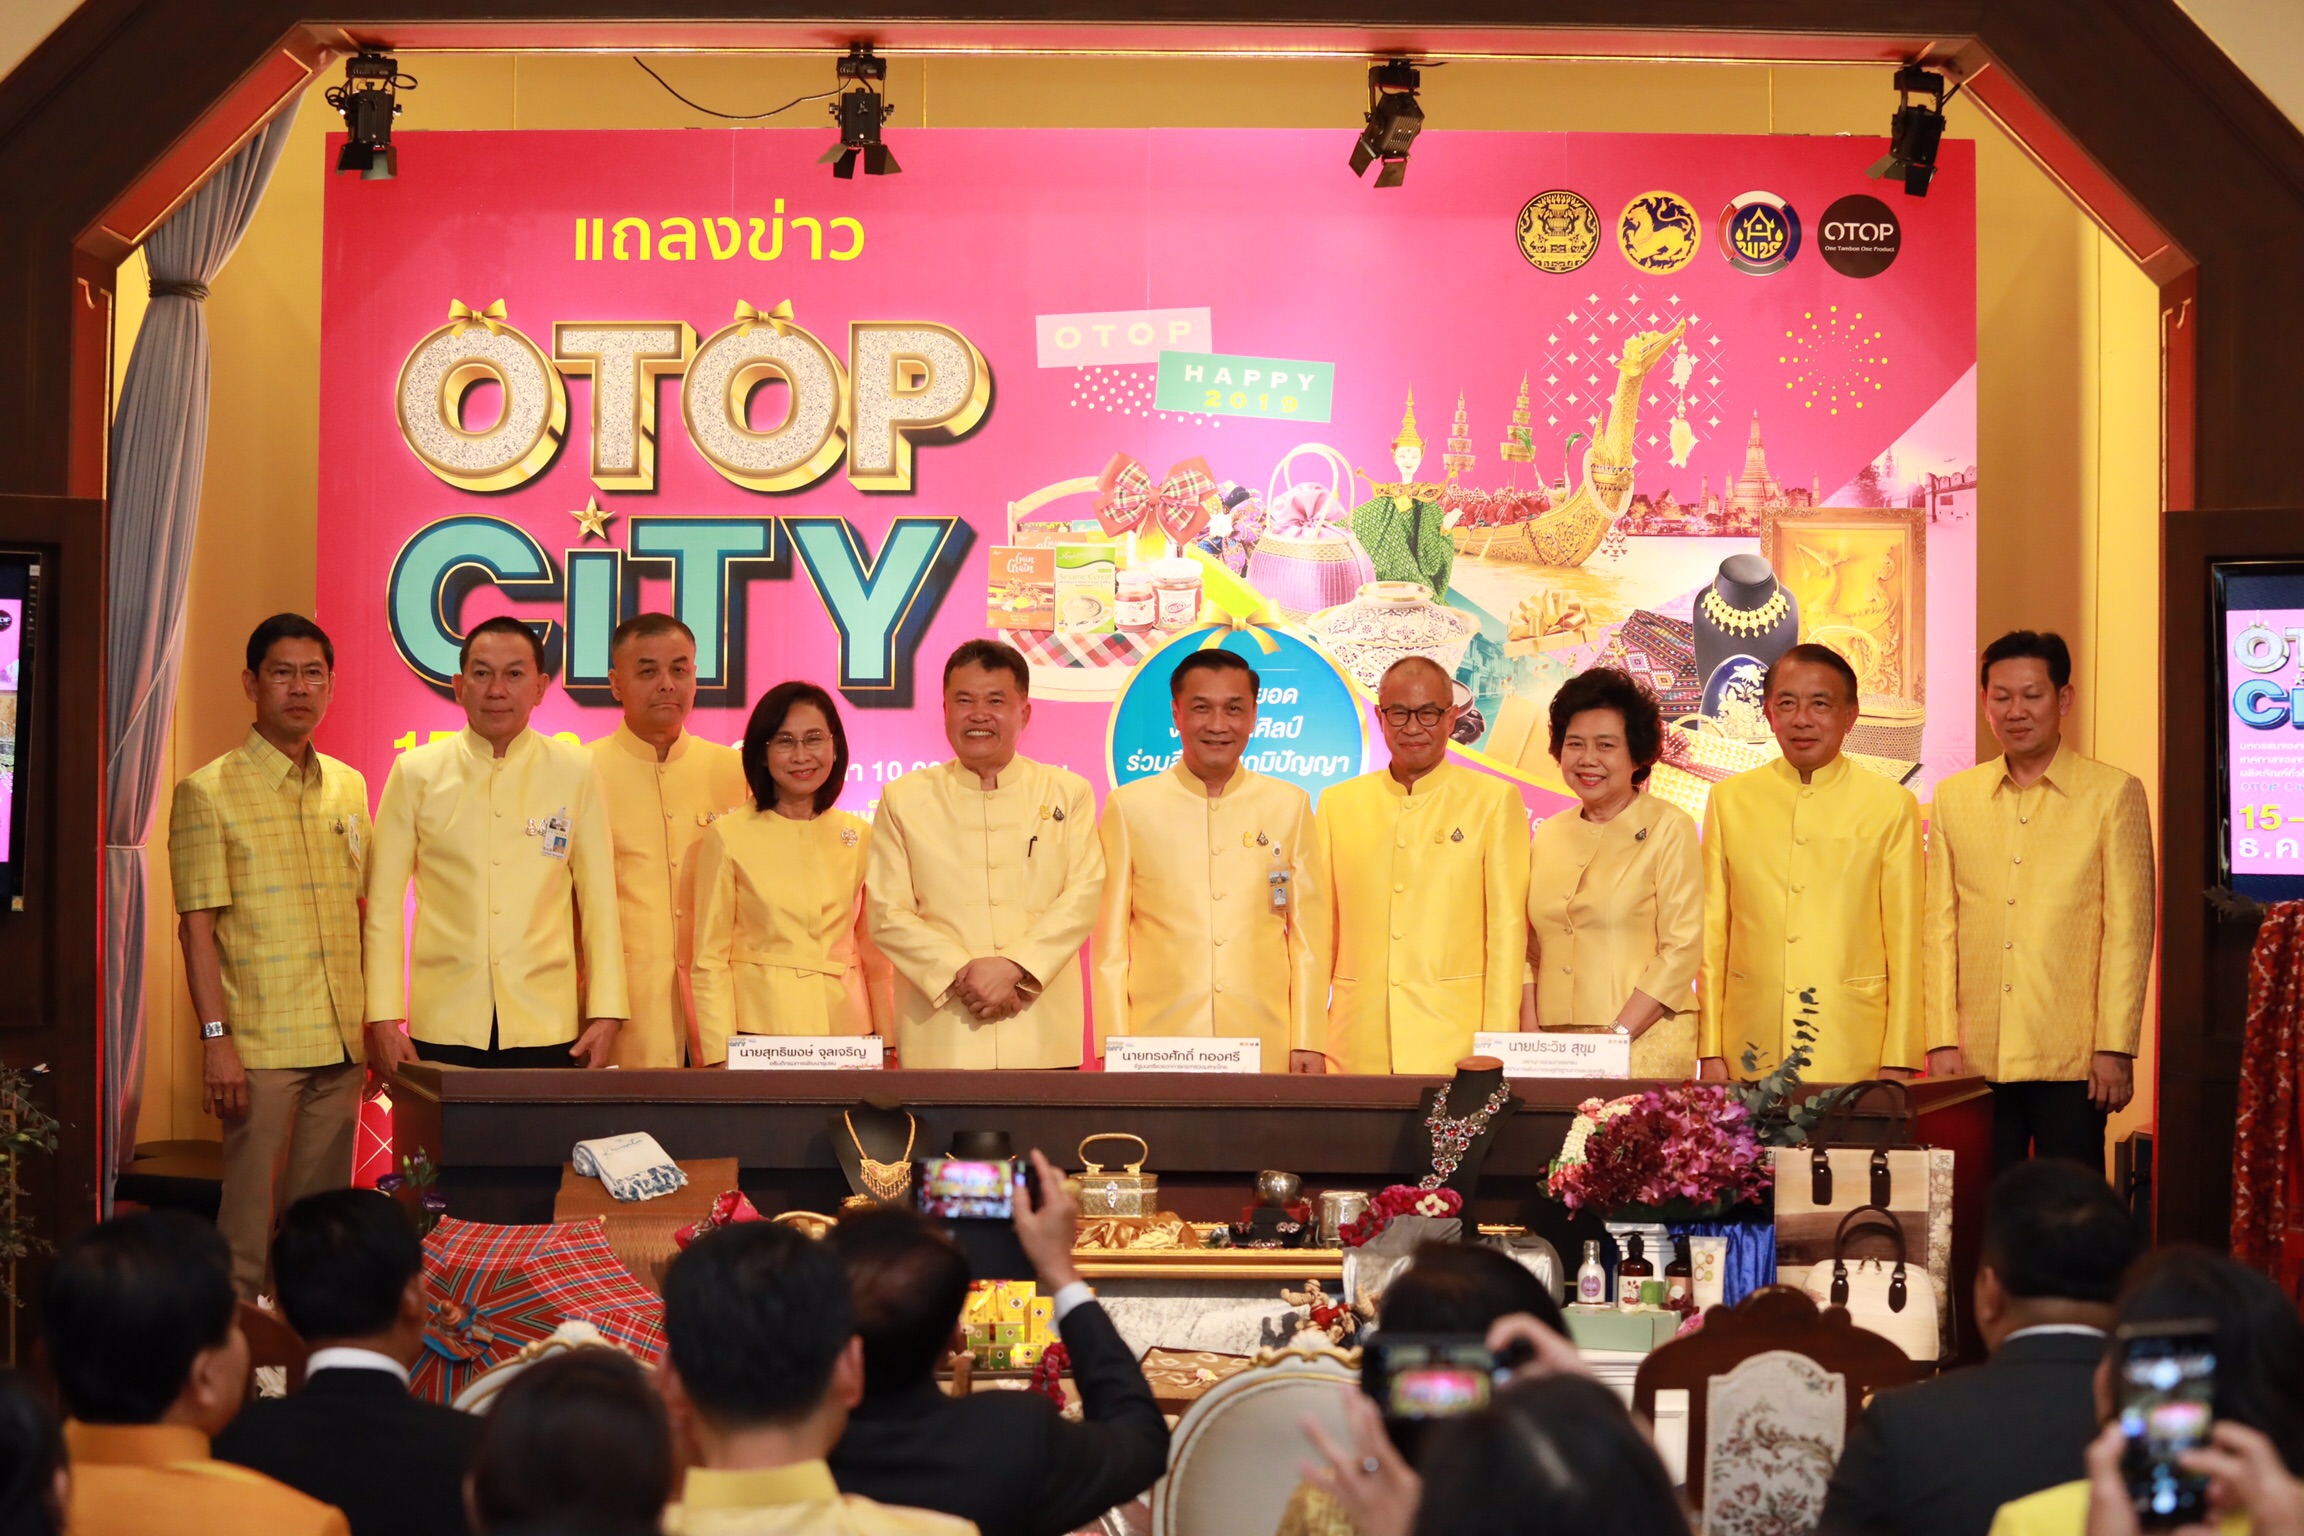 สุดยอดเทศกาลช้อปแห่งปี OTOP City 2019 มท.จัดเต็ม ยกขบวนสินค้า OTOP ร่วมฉลองปีใหม่ กระตุ้นเศรษฐกิจไทย